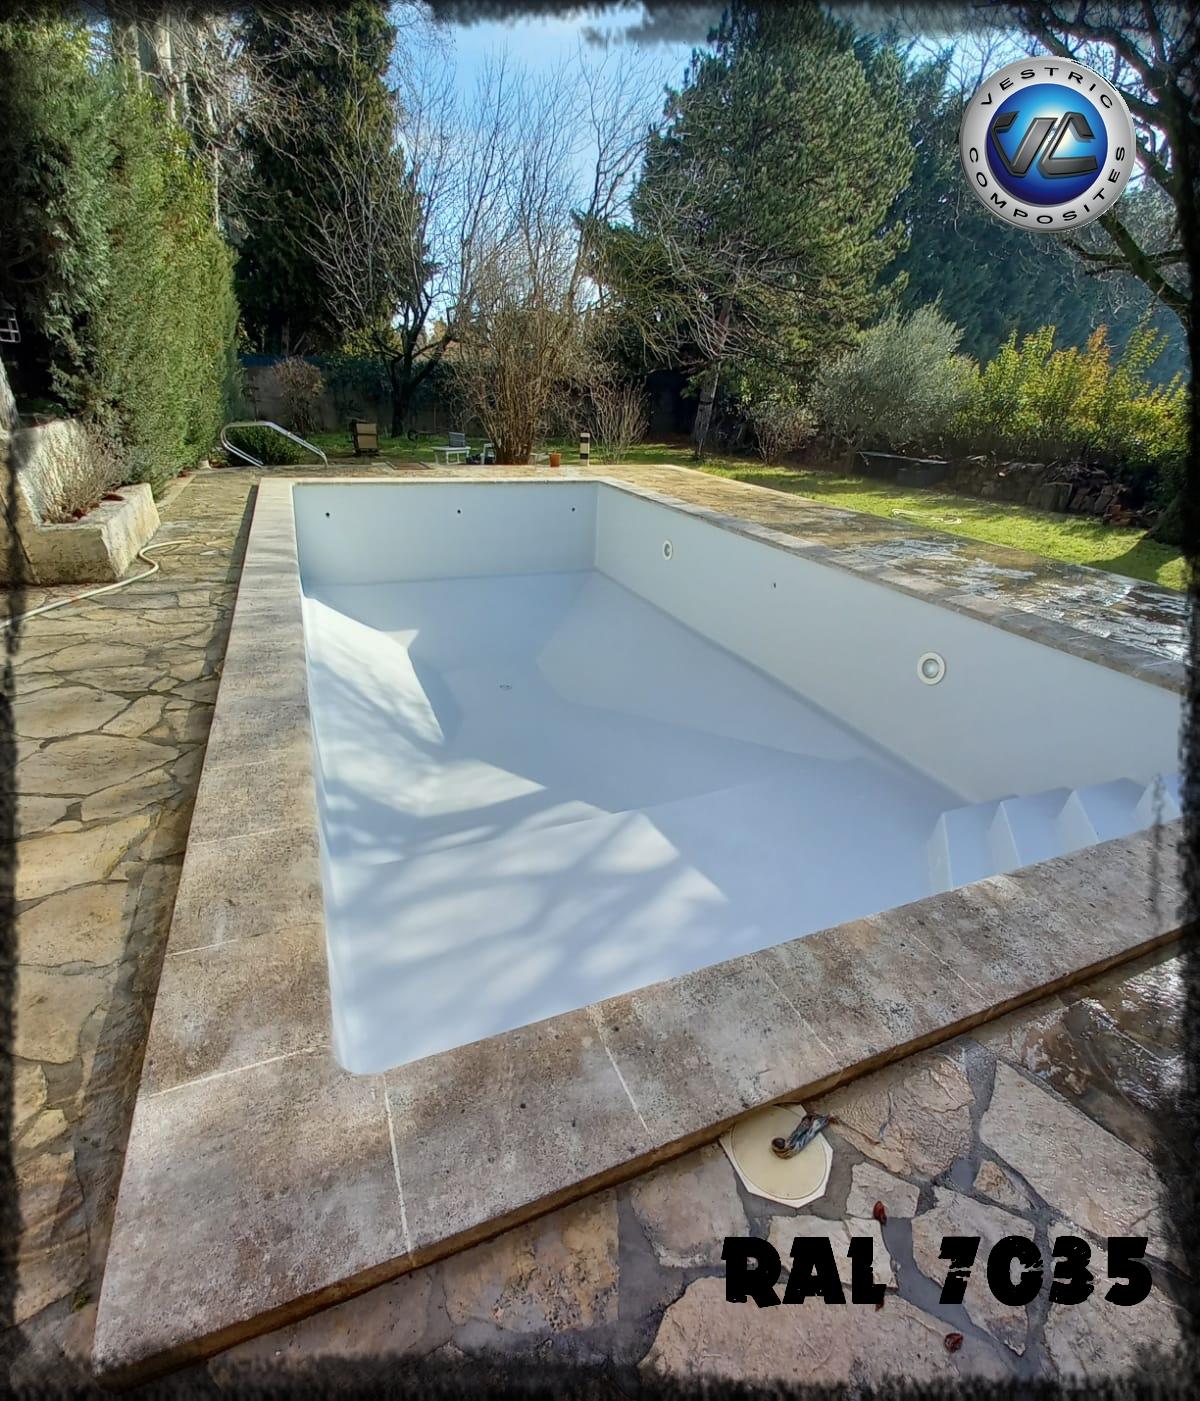 Ral 7035 gris clair piscine en eau couleur resine gel coat vestric composites 9